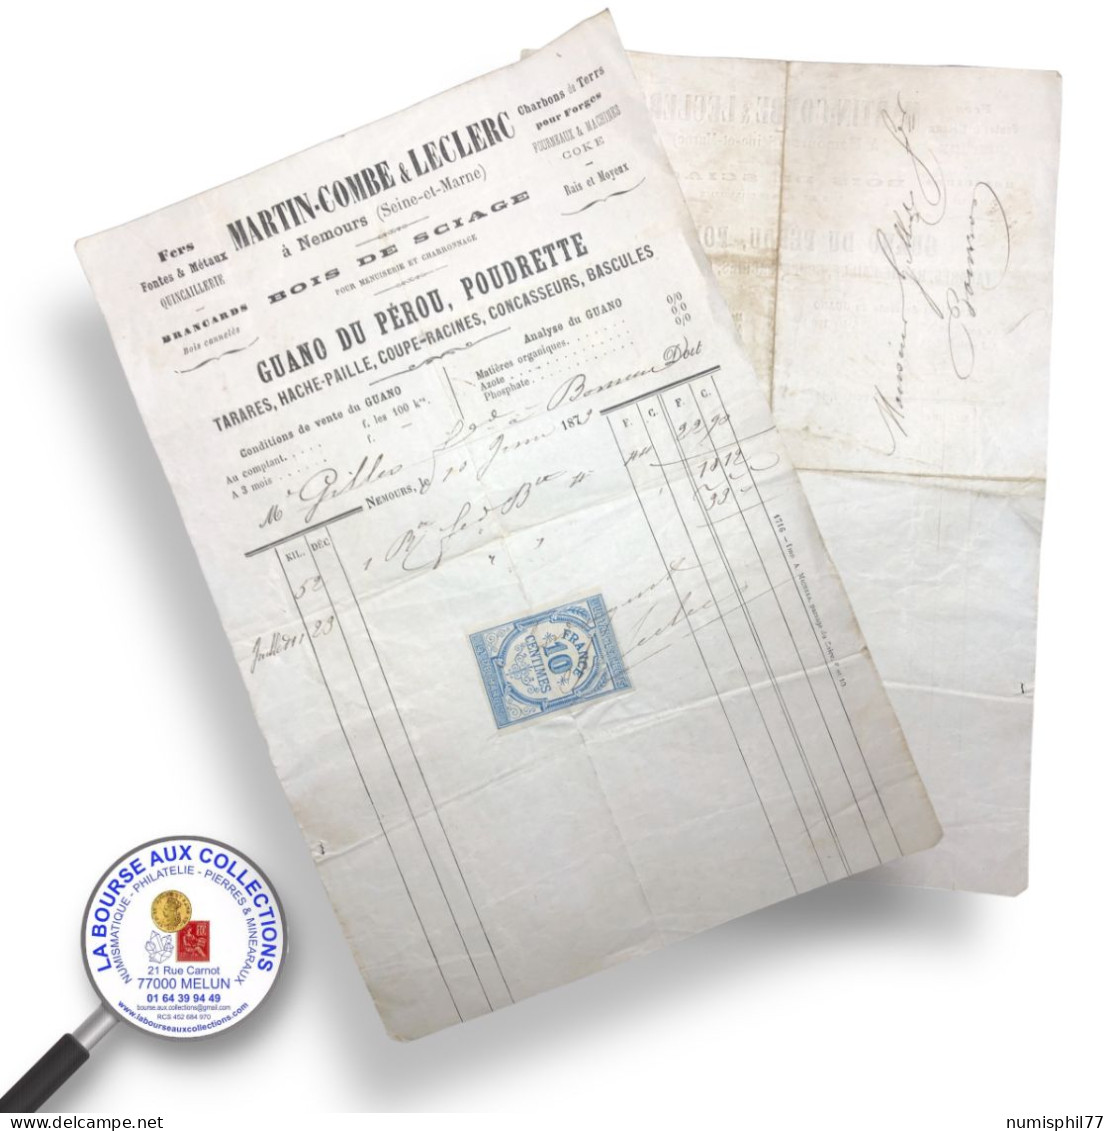 QUITTANCE 10 C Bleu Sur Facture MARTIN-COMBE & LECLERC à NEMOURS (77) 10/01/1879 - Briefe U. Dokumente